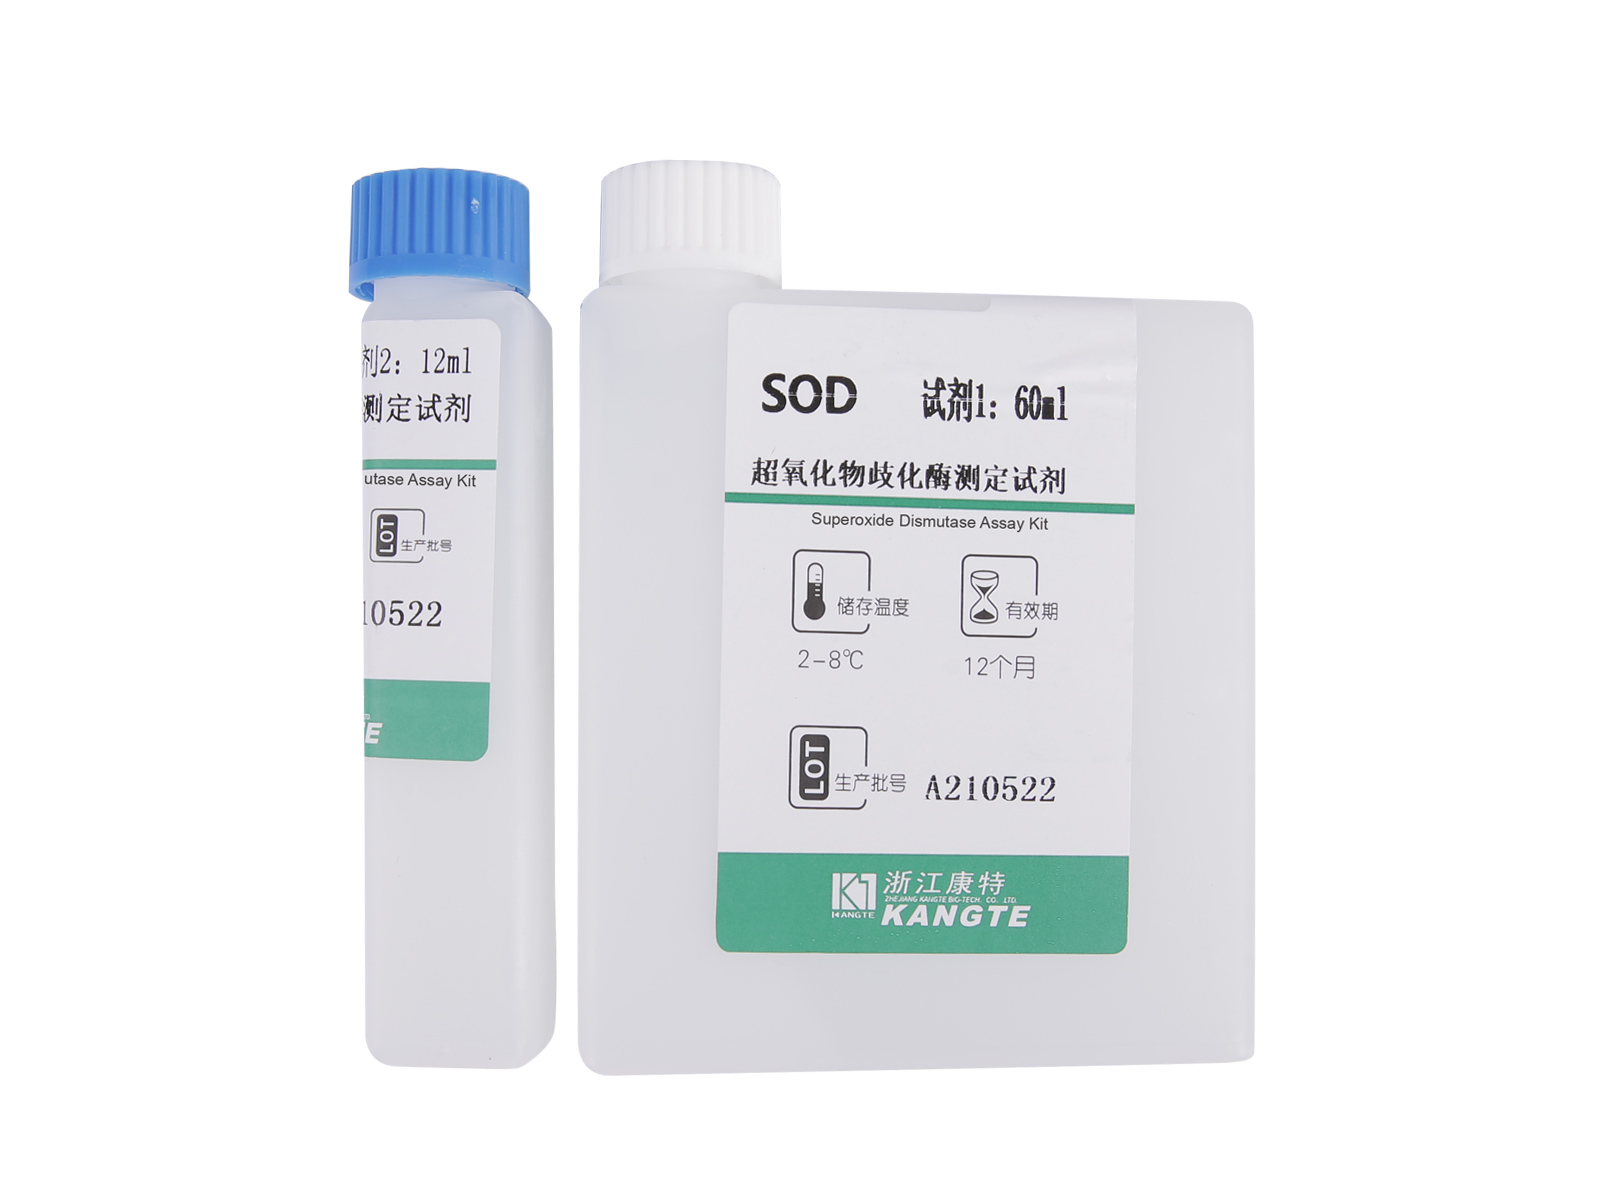 【SOD】Komplet za analizu superoksid dismutaze (kolorimetrijska metoda)